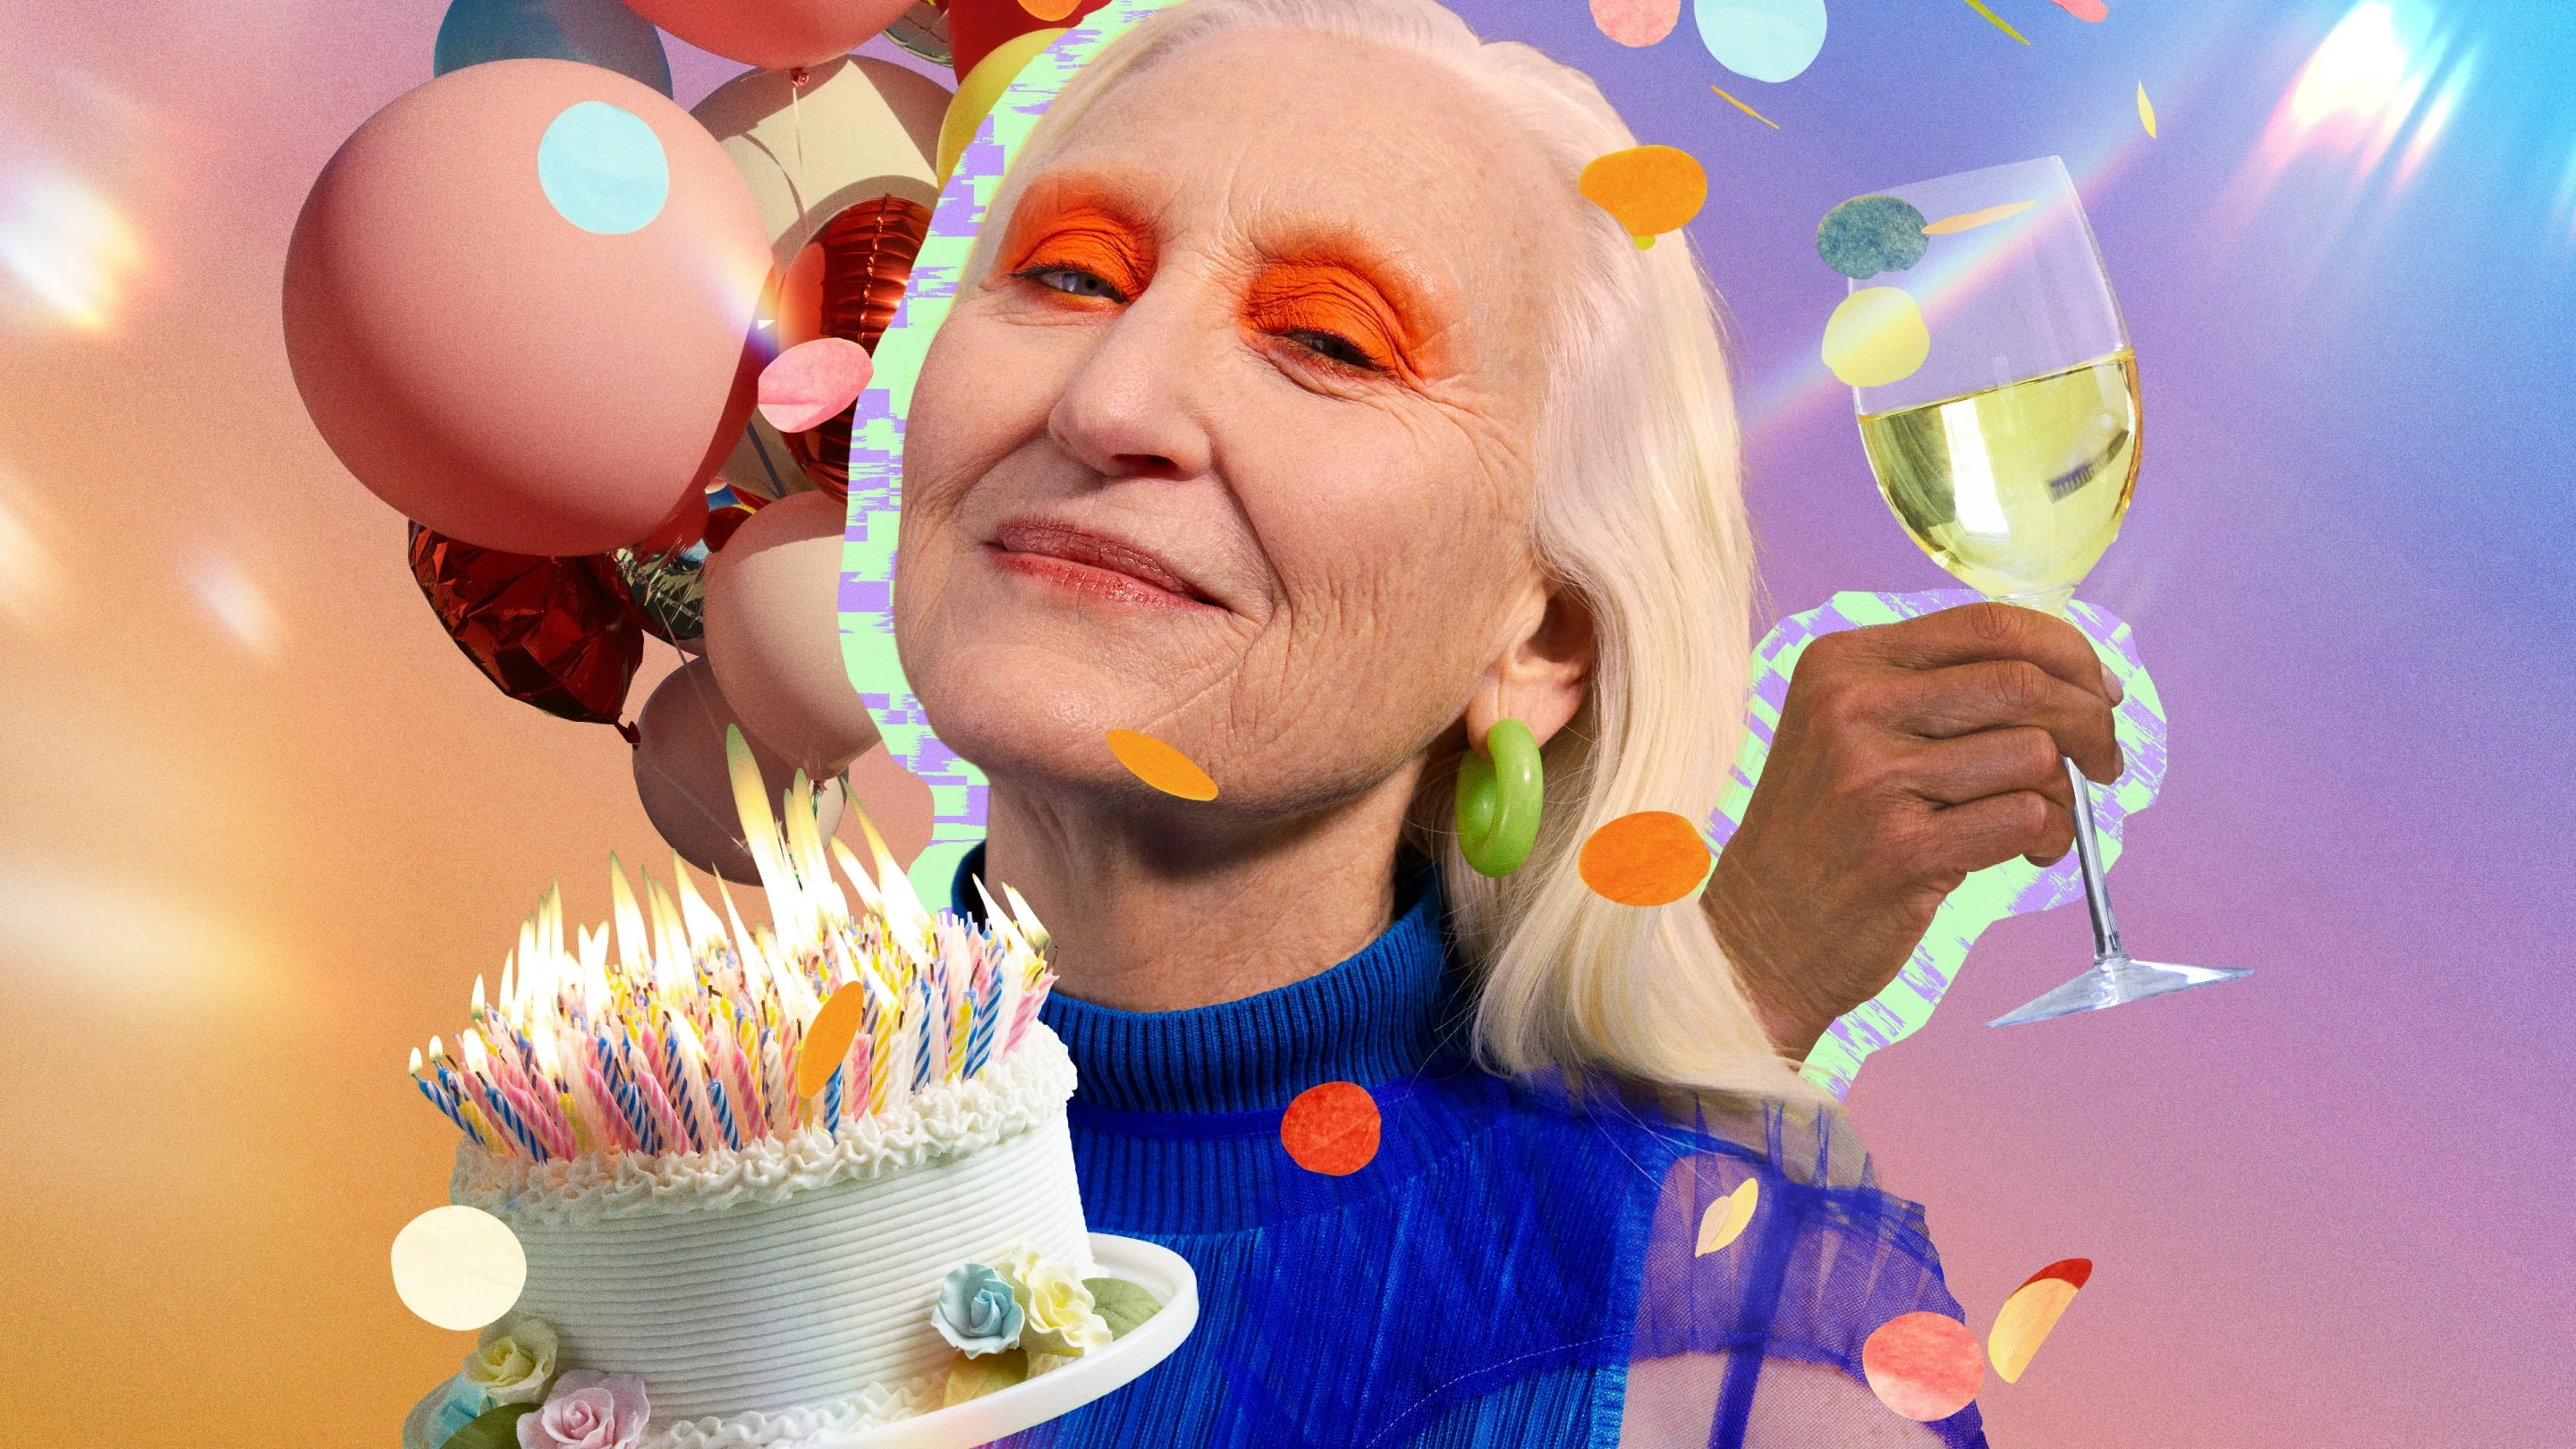 風船、ワイングラスを持った手、ろうそくが溢れるバースデーケーキに囲まれた、明るいアイメイクの年配の白人女性を取り上げたコラージュ。